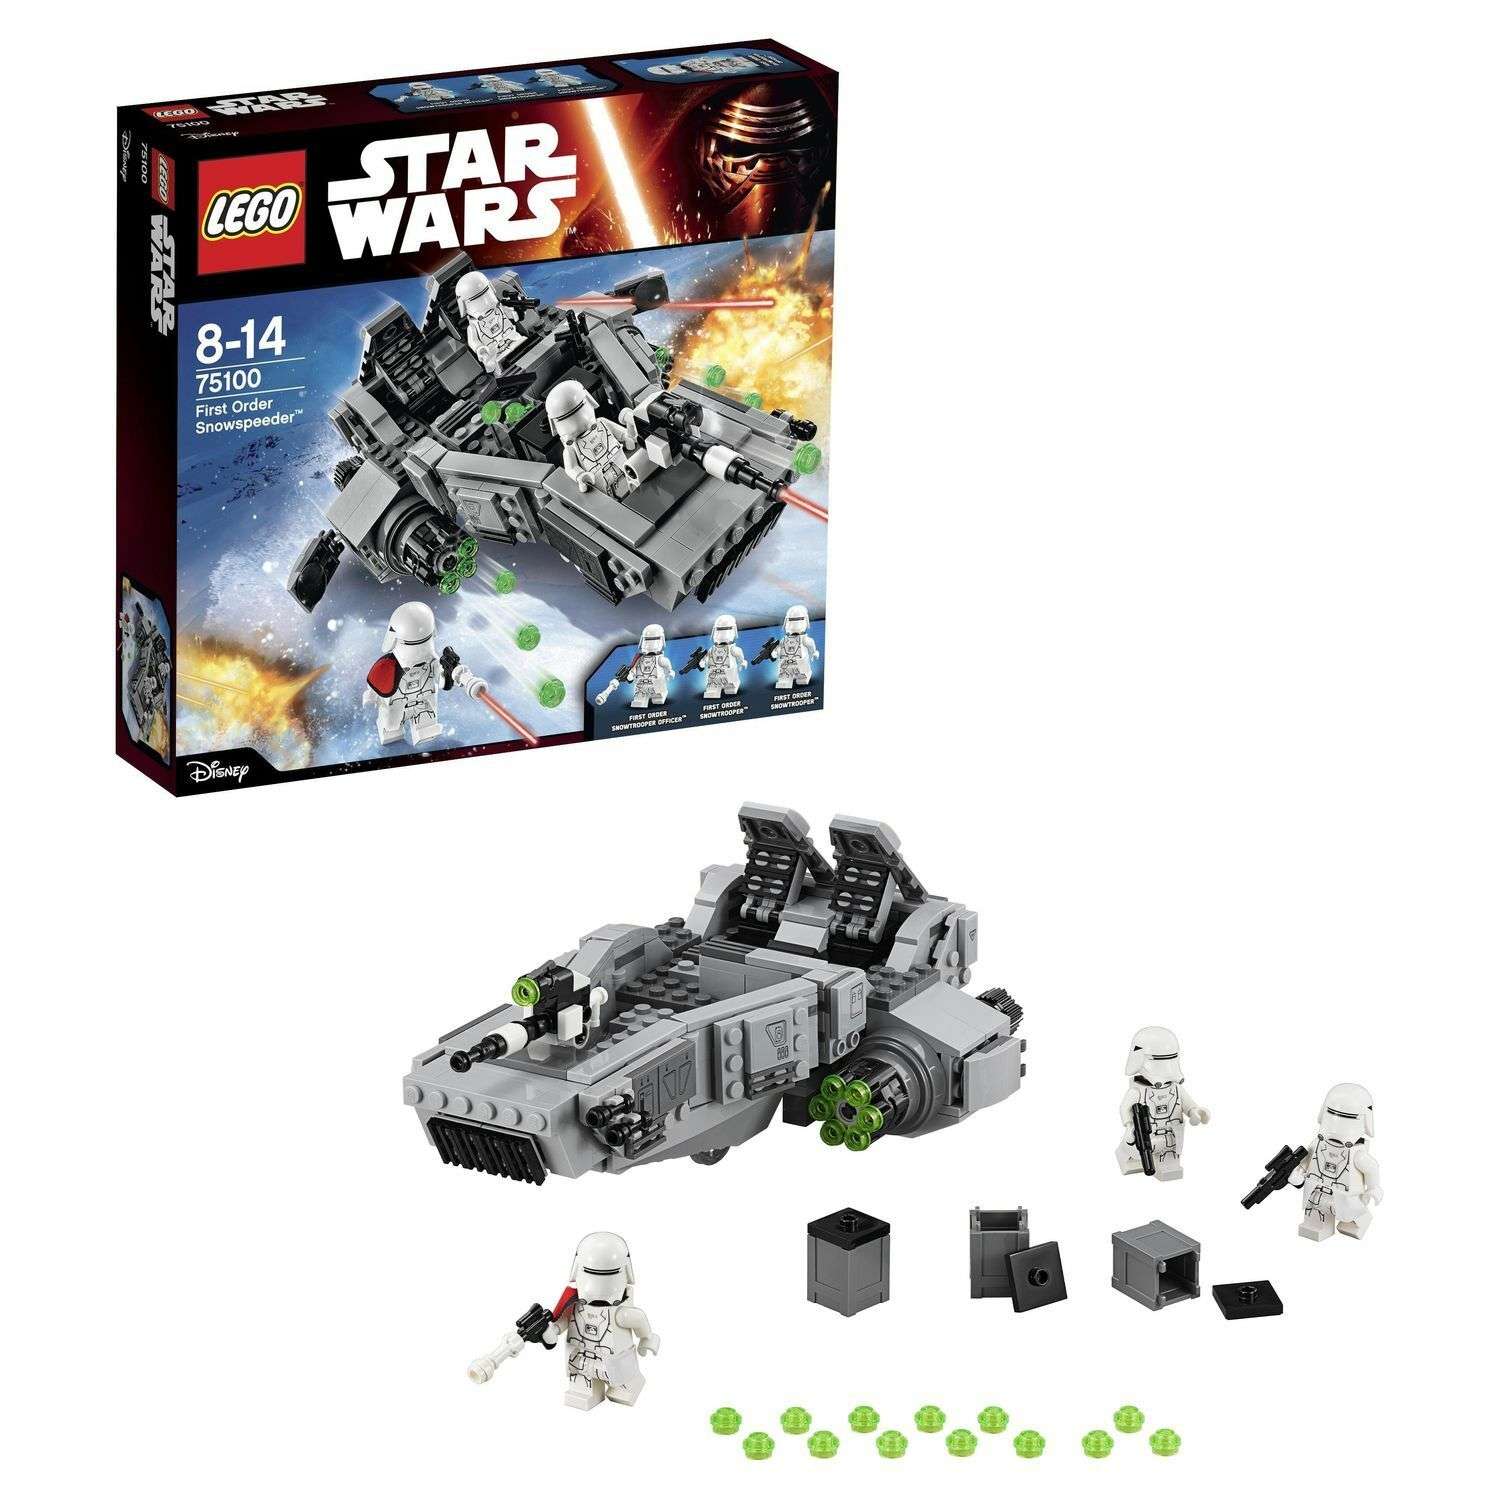 Конструктор LEGO Star Wars TM Снежный спидер Первого Ордена (First Order Snowspeeder™) (75100) - фото 1